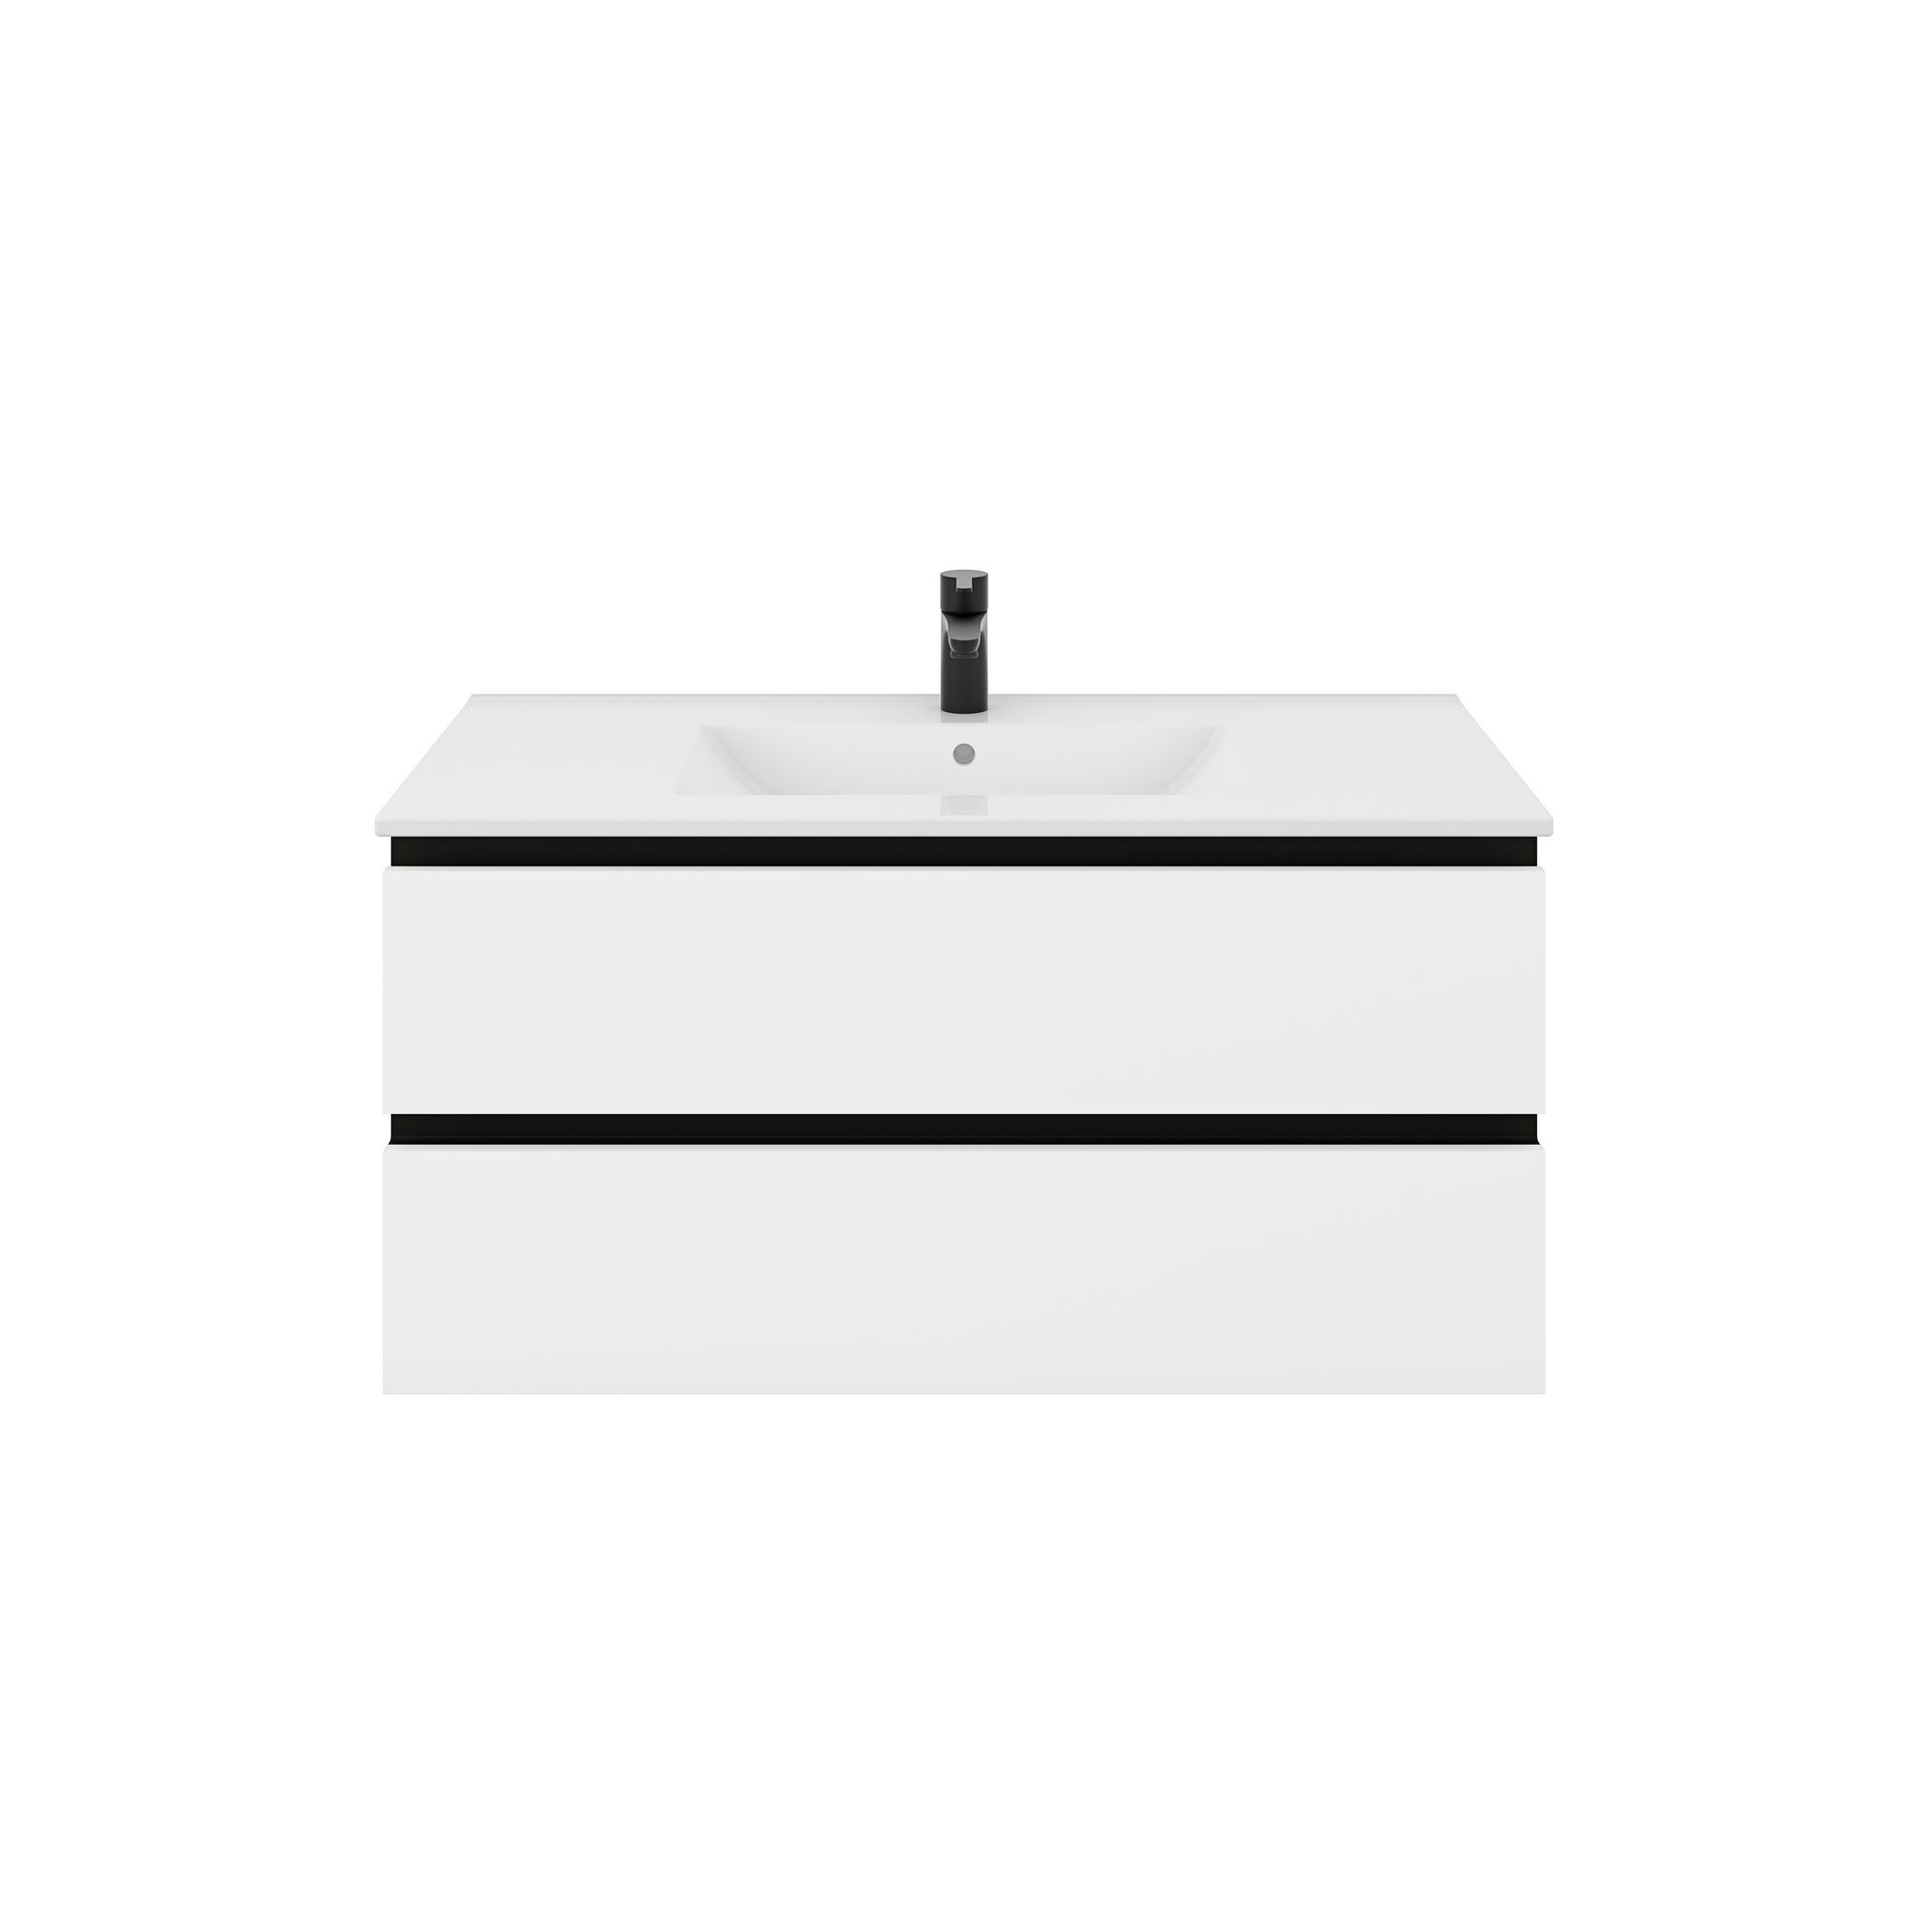 Waschtischunterschrank 'OPTIpremio 2510clarus' weiß, schwarz 102 x 47,8 x 47 cm + product picture